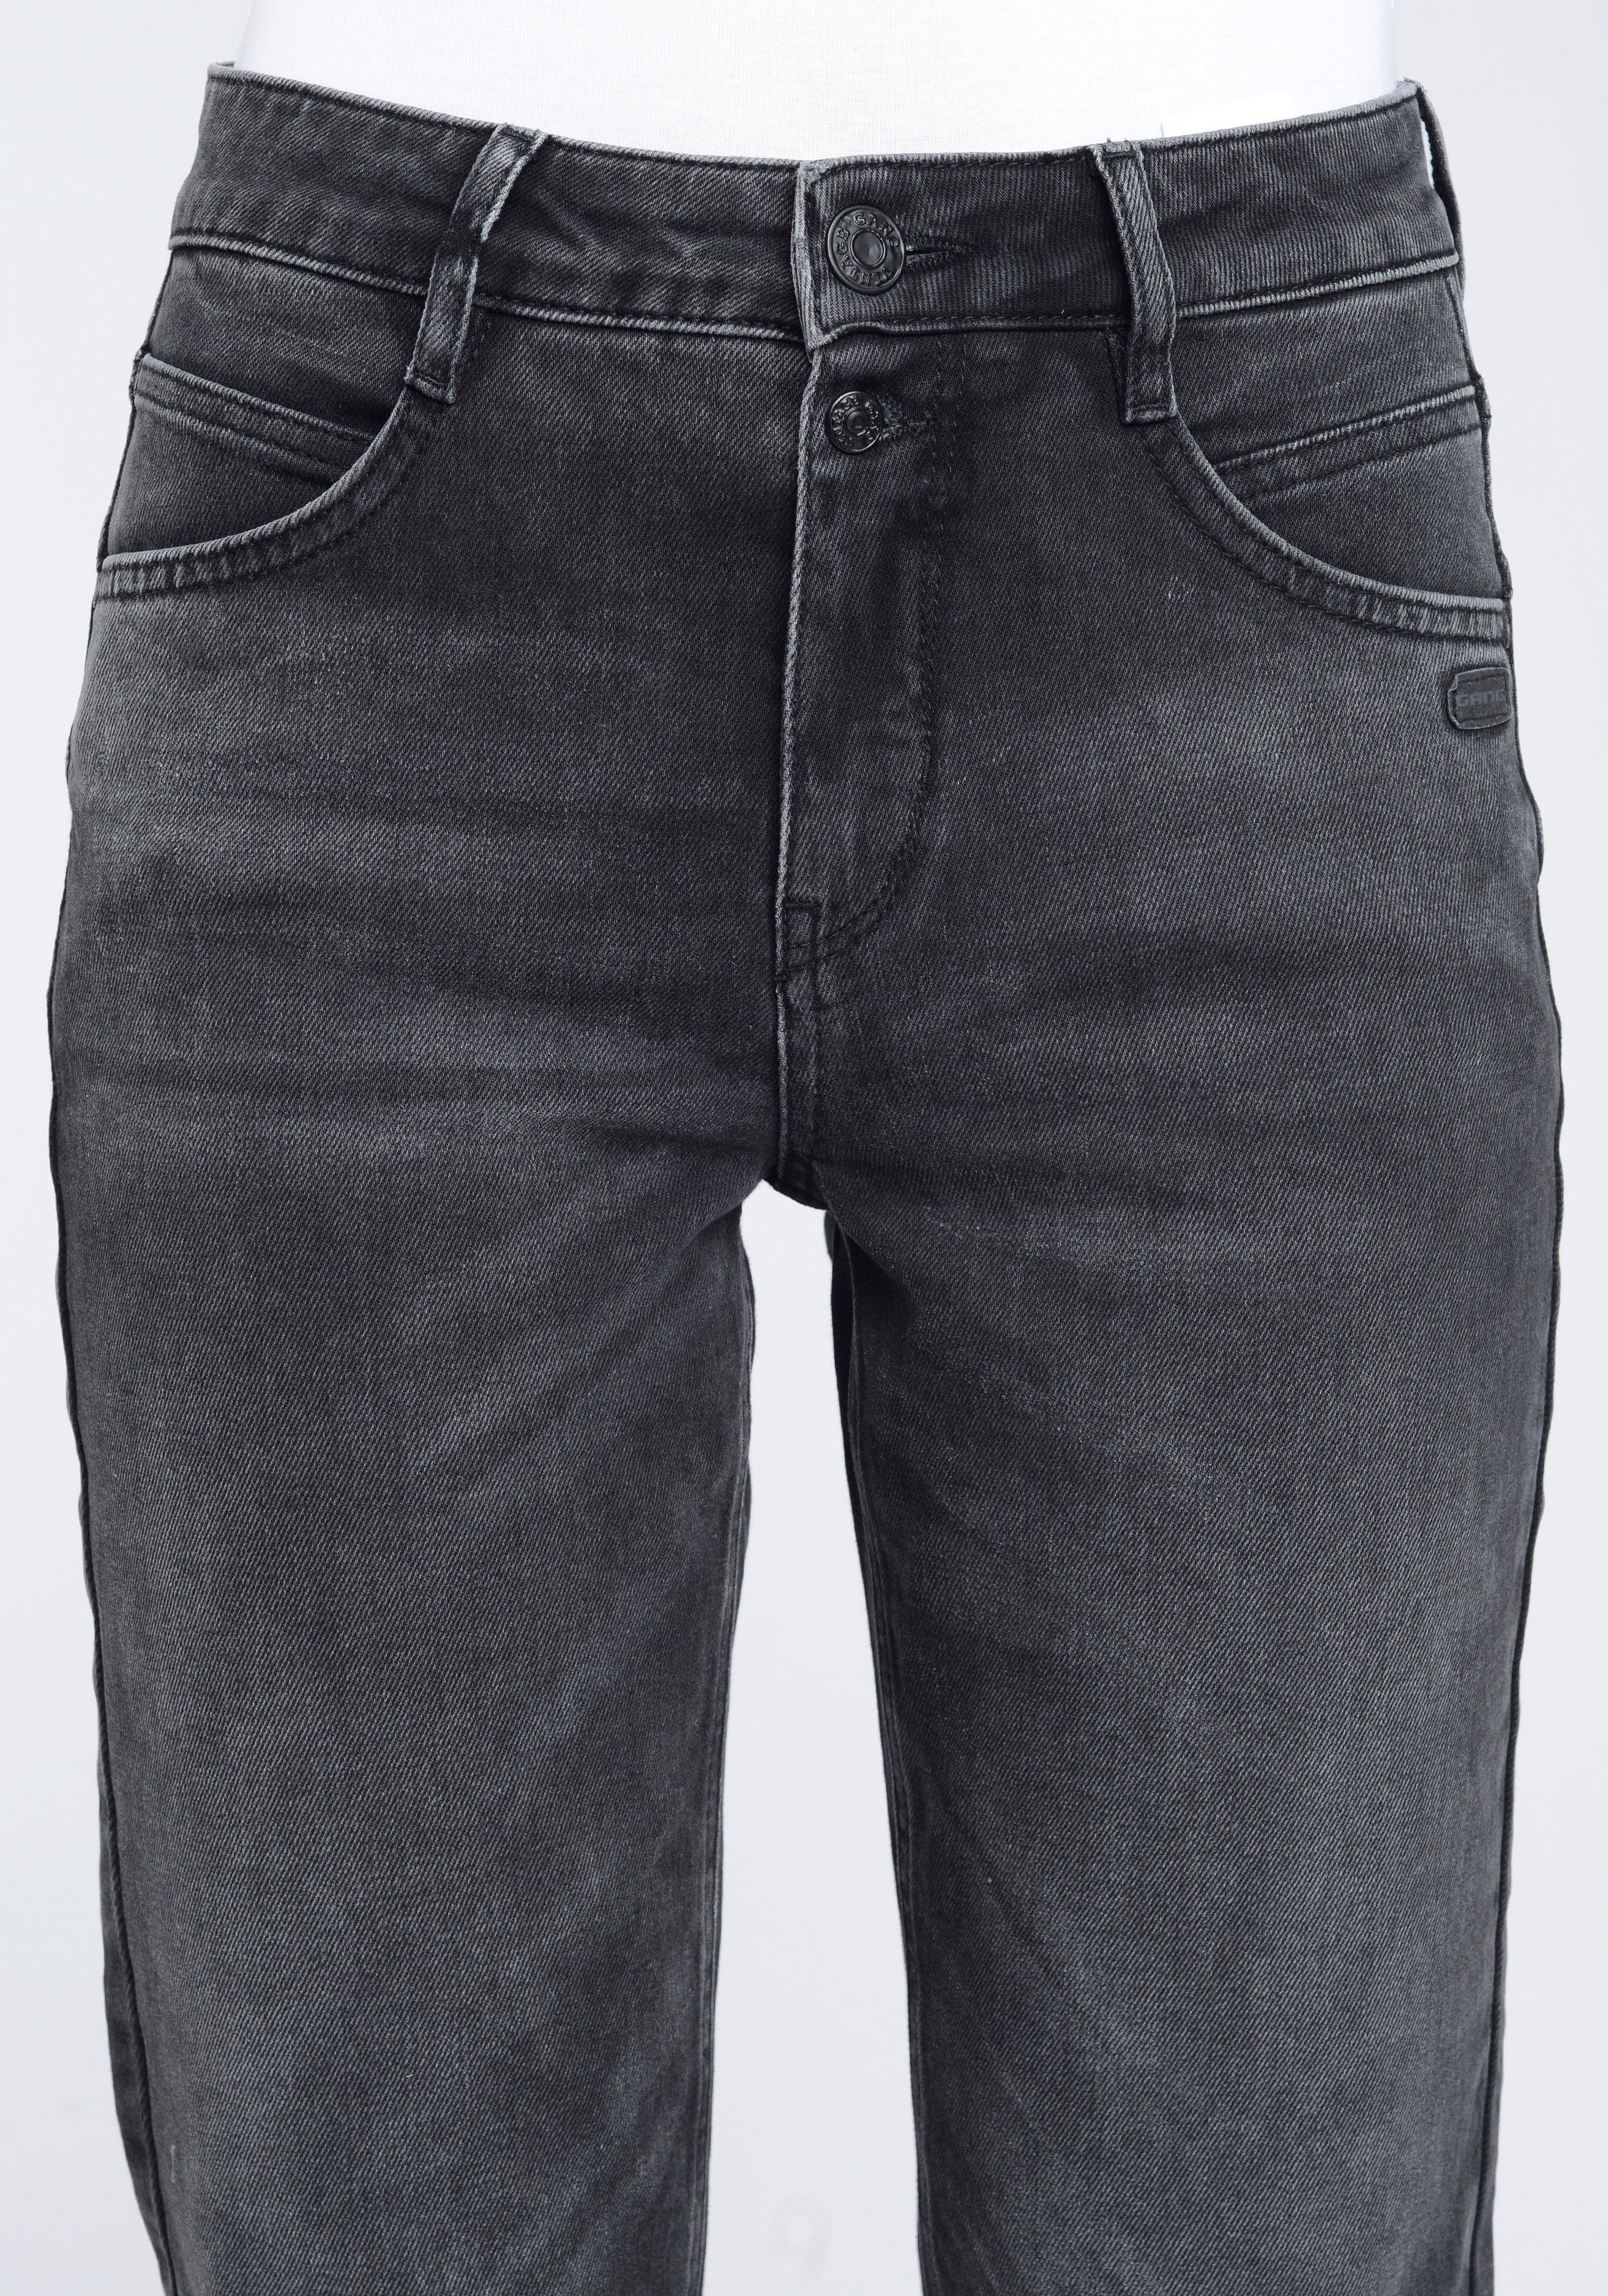 Mom-Jeans Vintage verkürzter 94ORA Grey Beinlänge GANG mit 2-Knopf-Verschluss